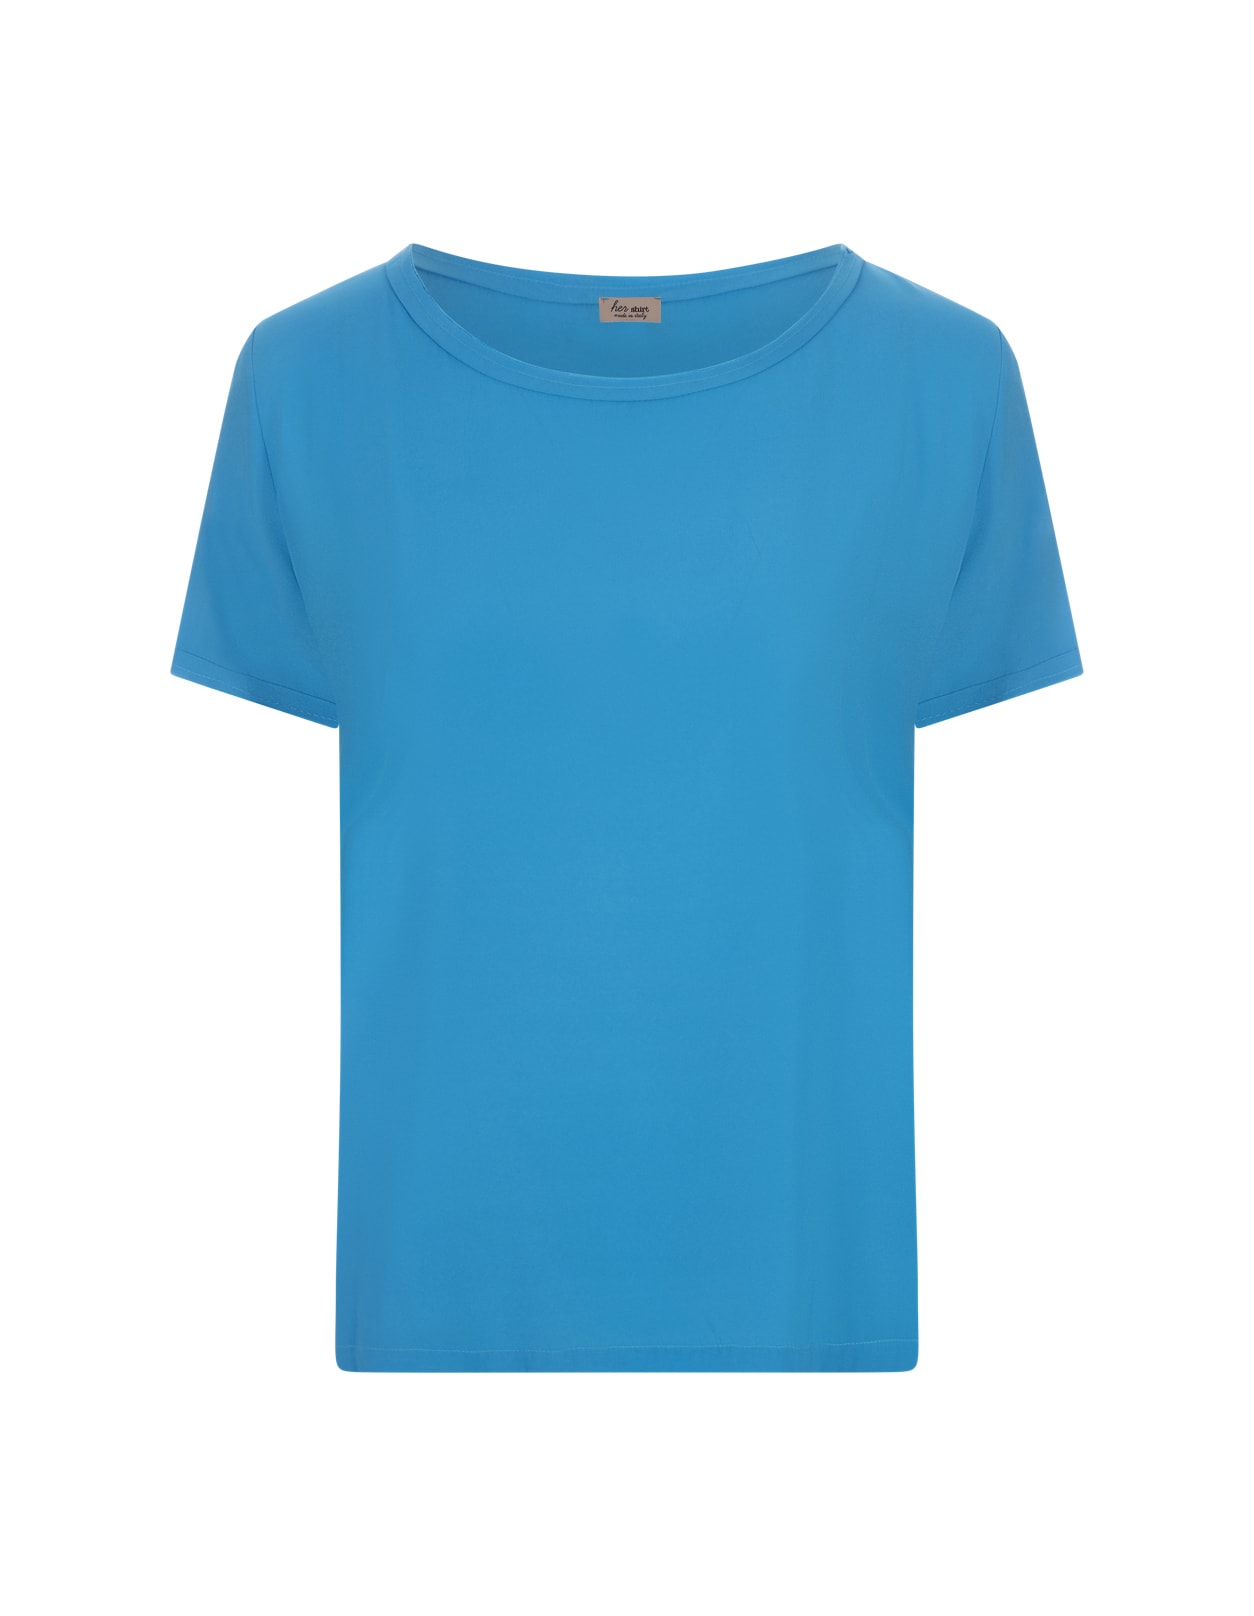 Her Shirt Blue Opaque Silk T-shirt